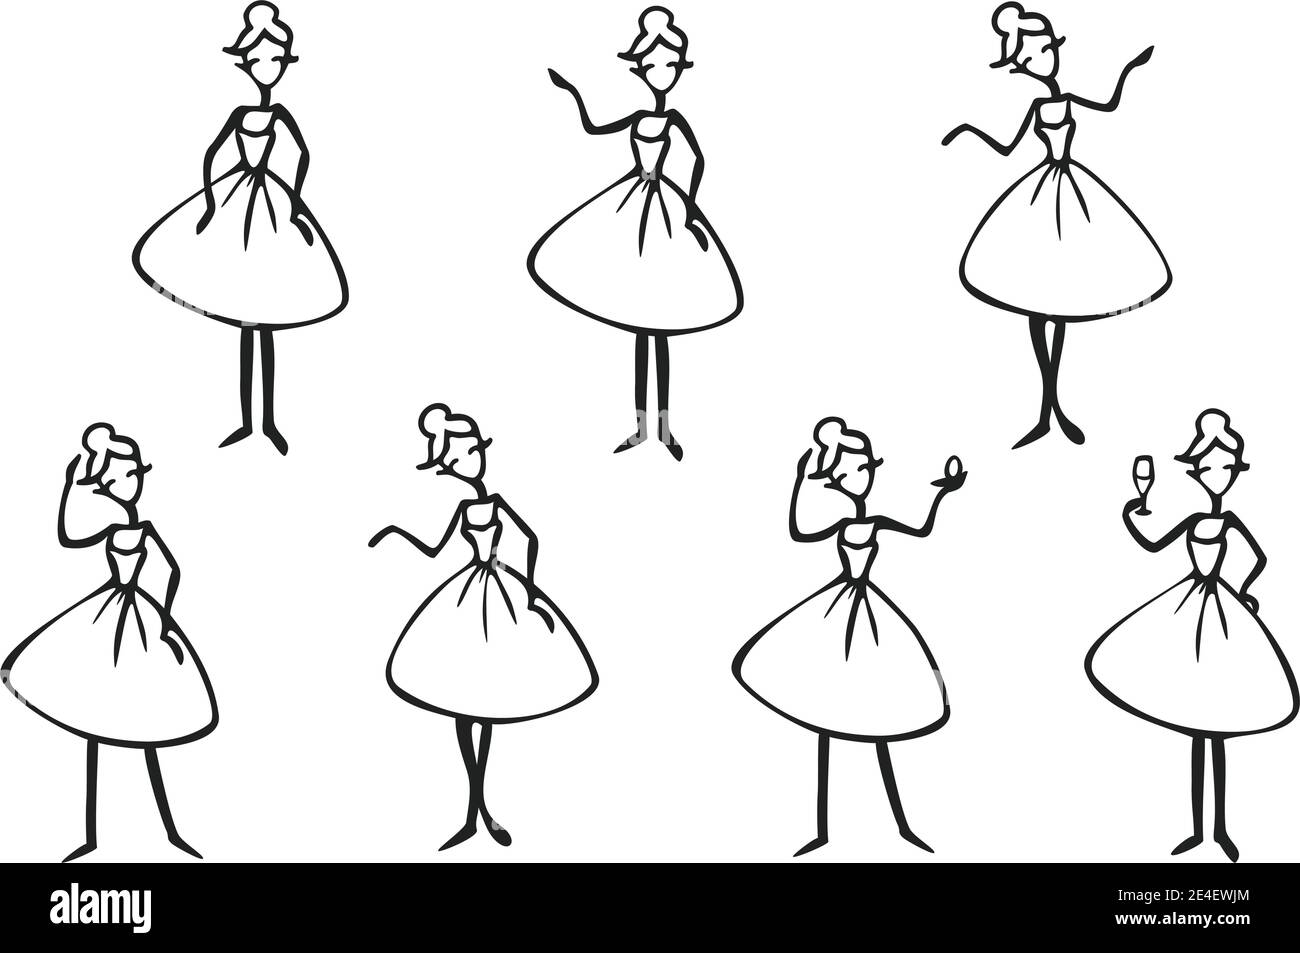 Vektor-Set mit Dame Cartoon Charakter Silhouetten. Schwarz-weiße Damen in verschiedenen Posen. Stock Vektor